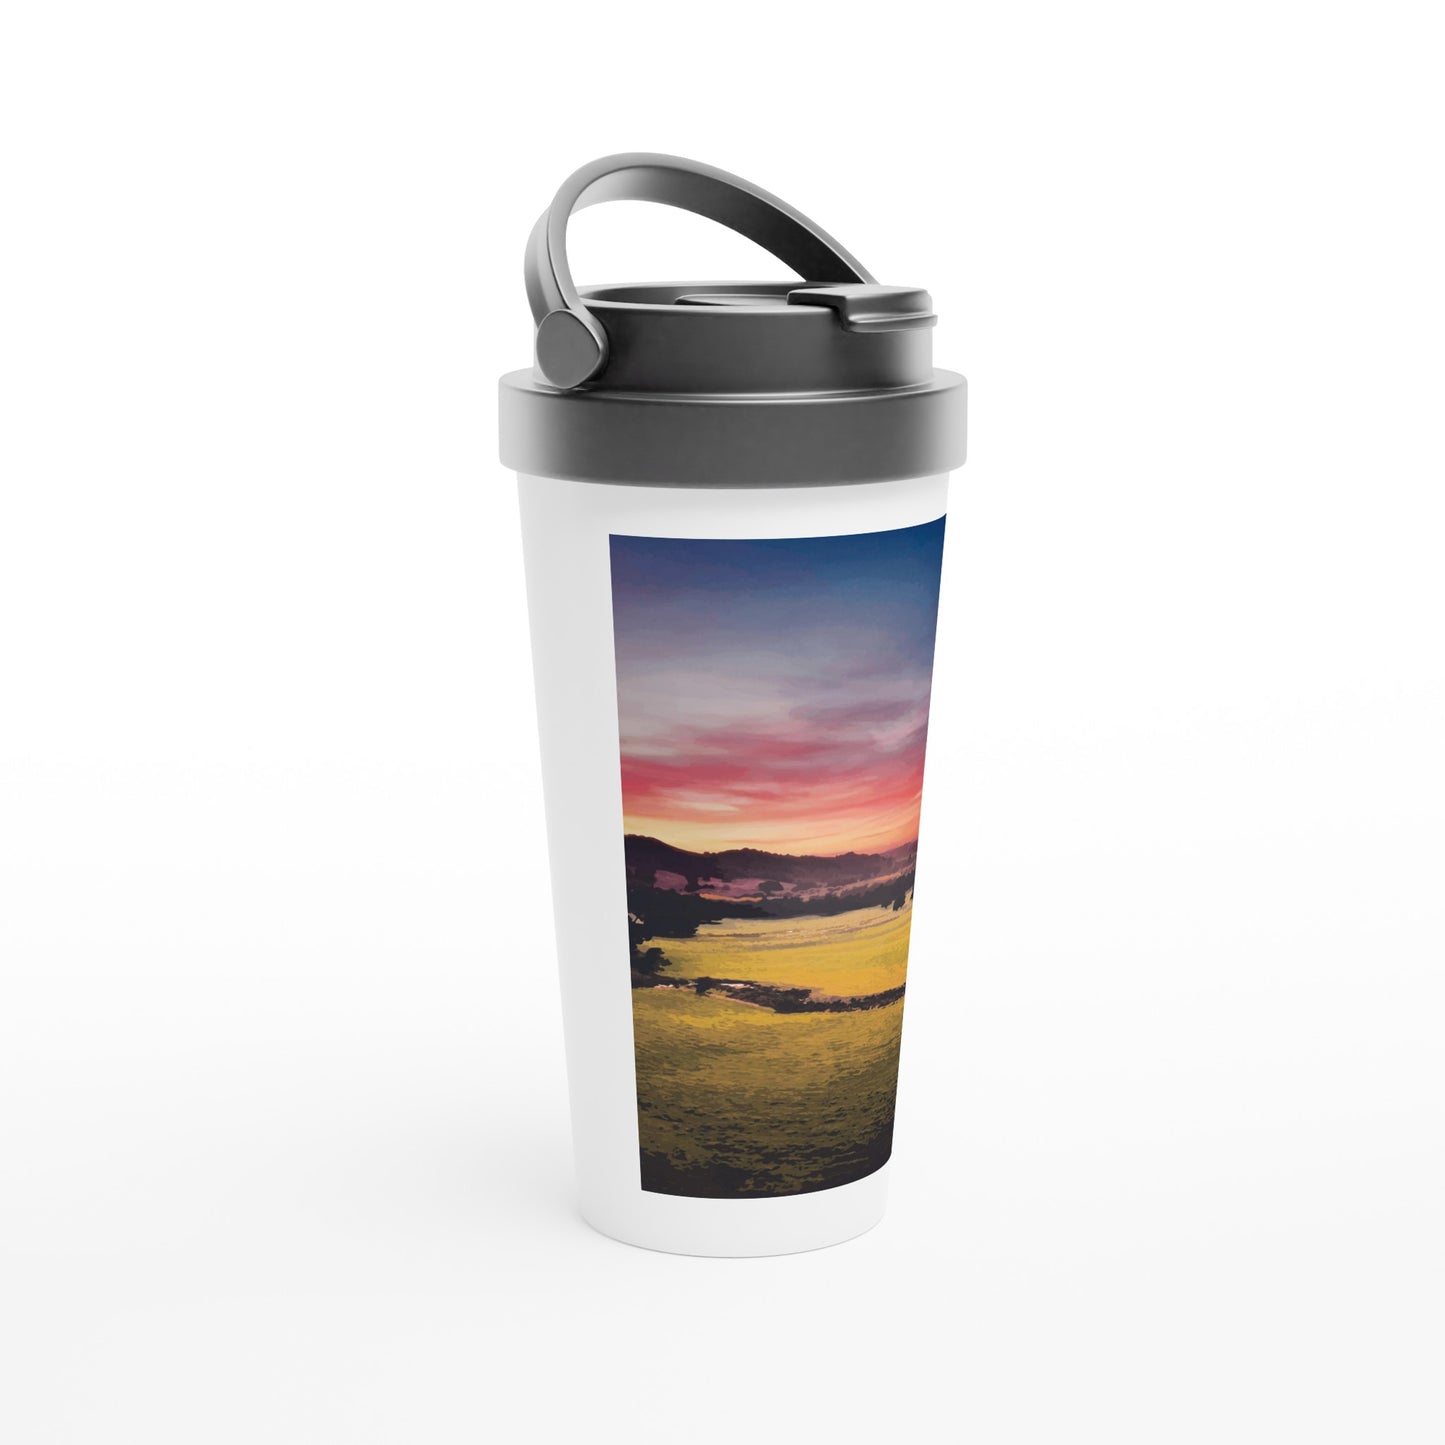 'Mikimiki Sunrise' white 15oz stainless steel travel mug